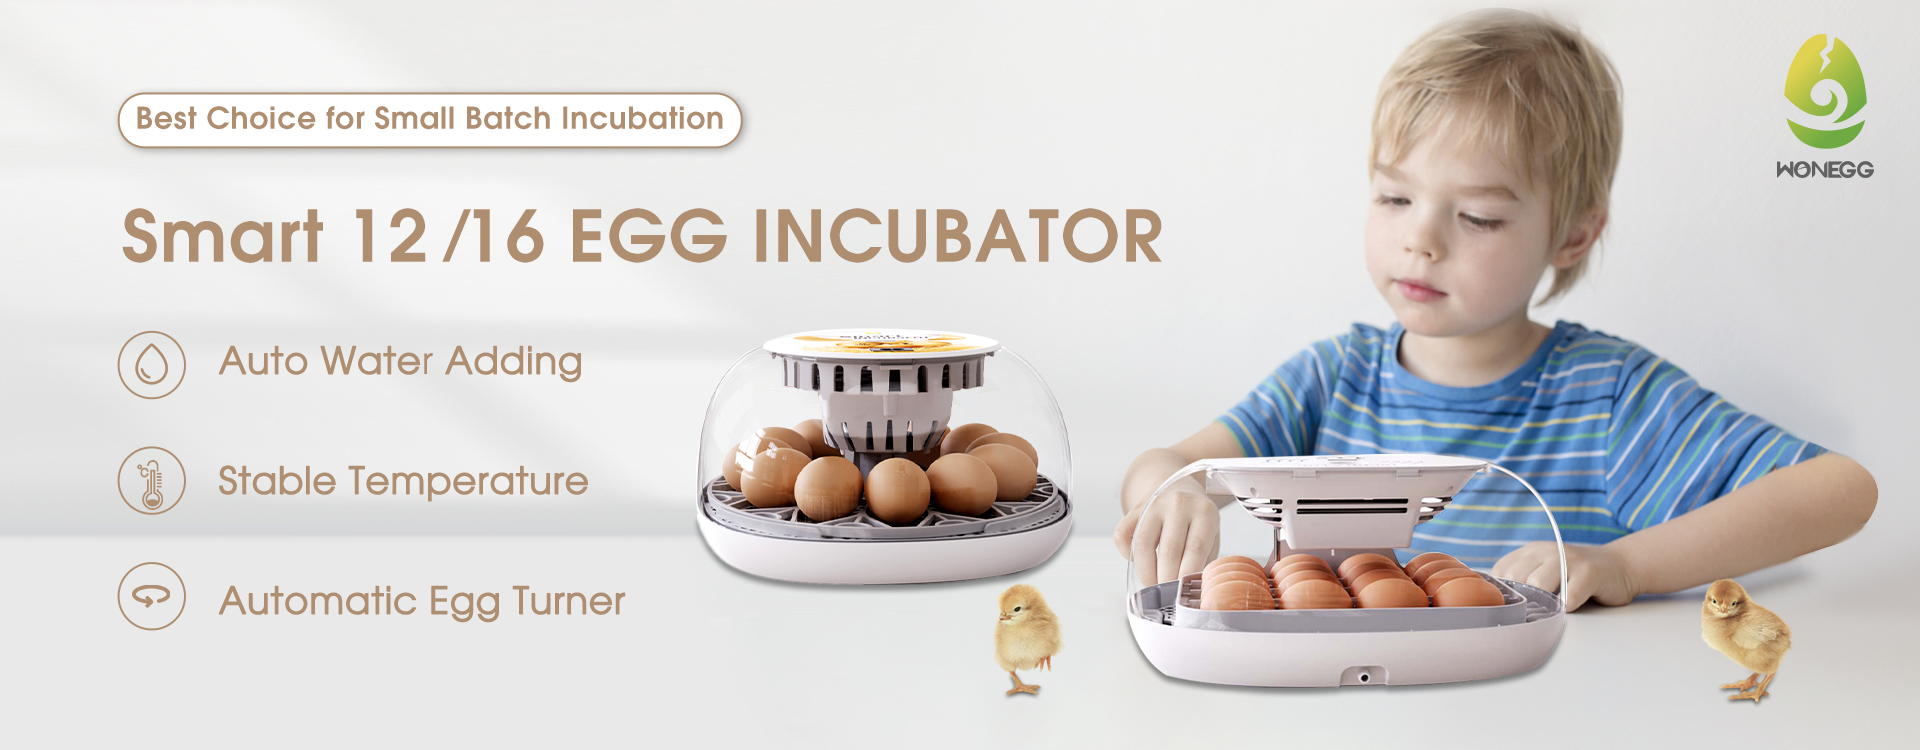 инкубатор паметен 12 16 јајца